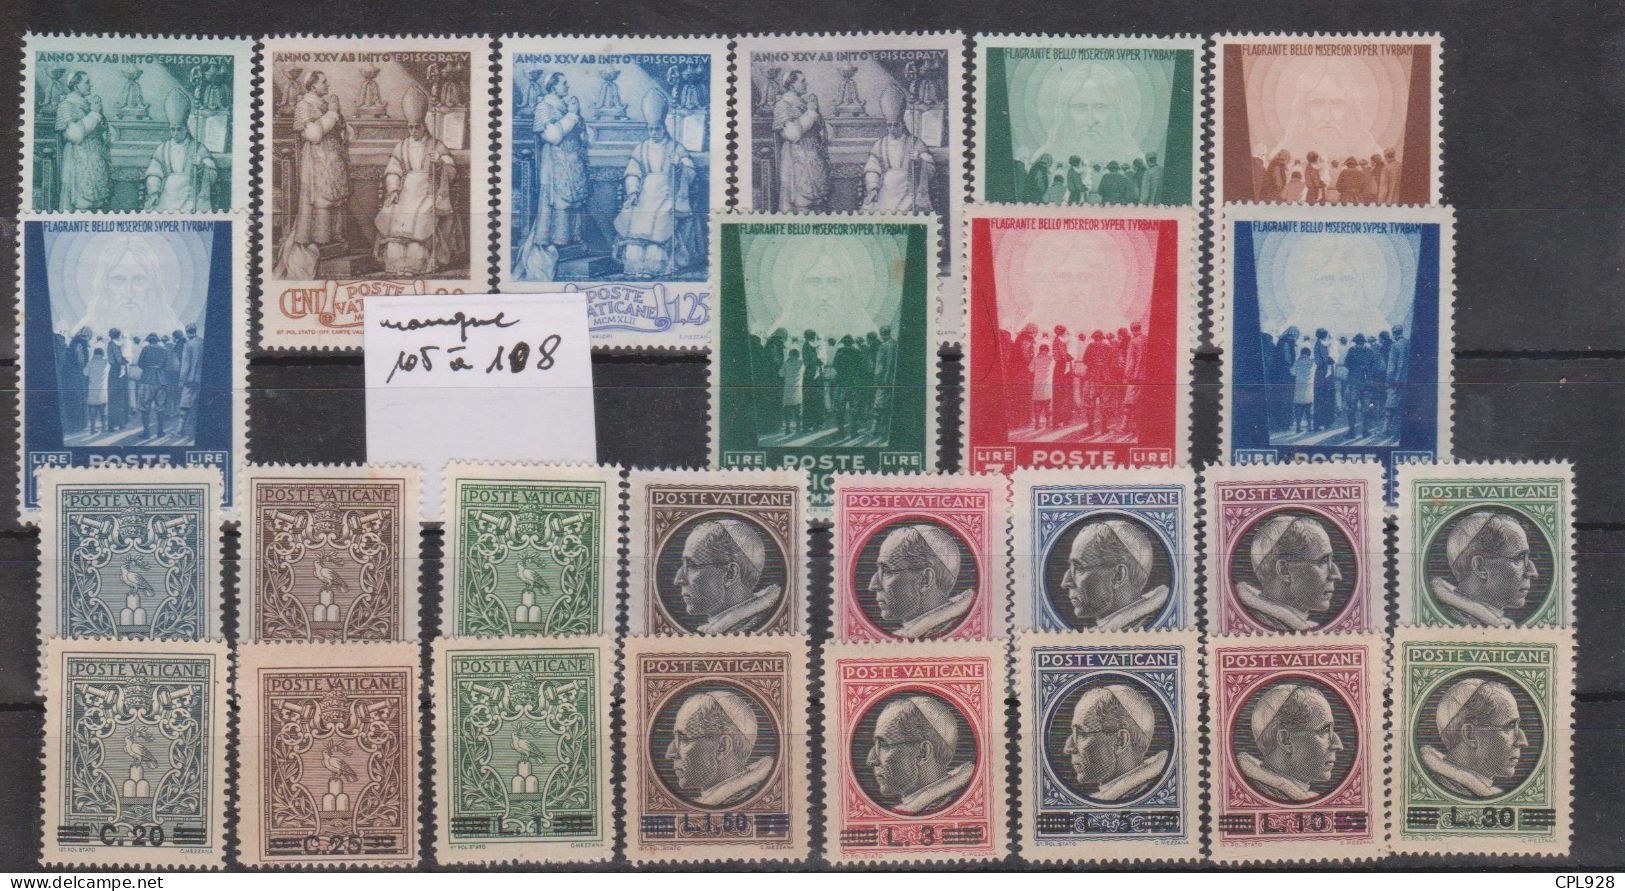 Vatican N° 98 à 127 Avec Charnières - Unused Stamps